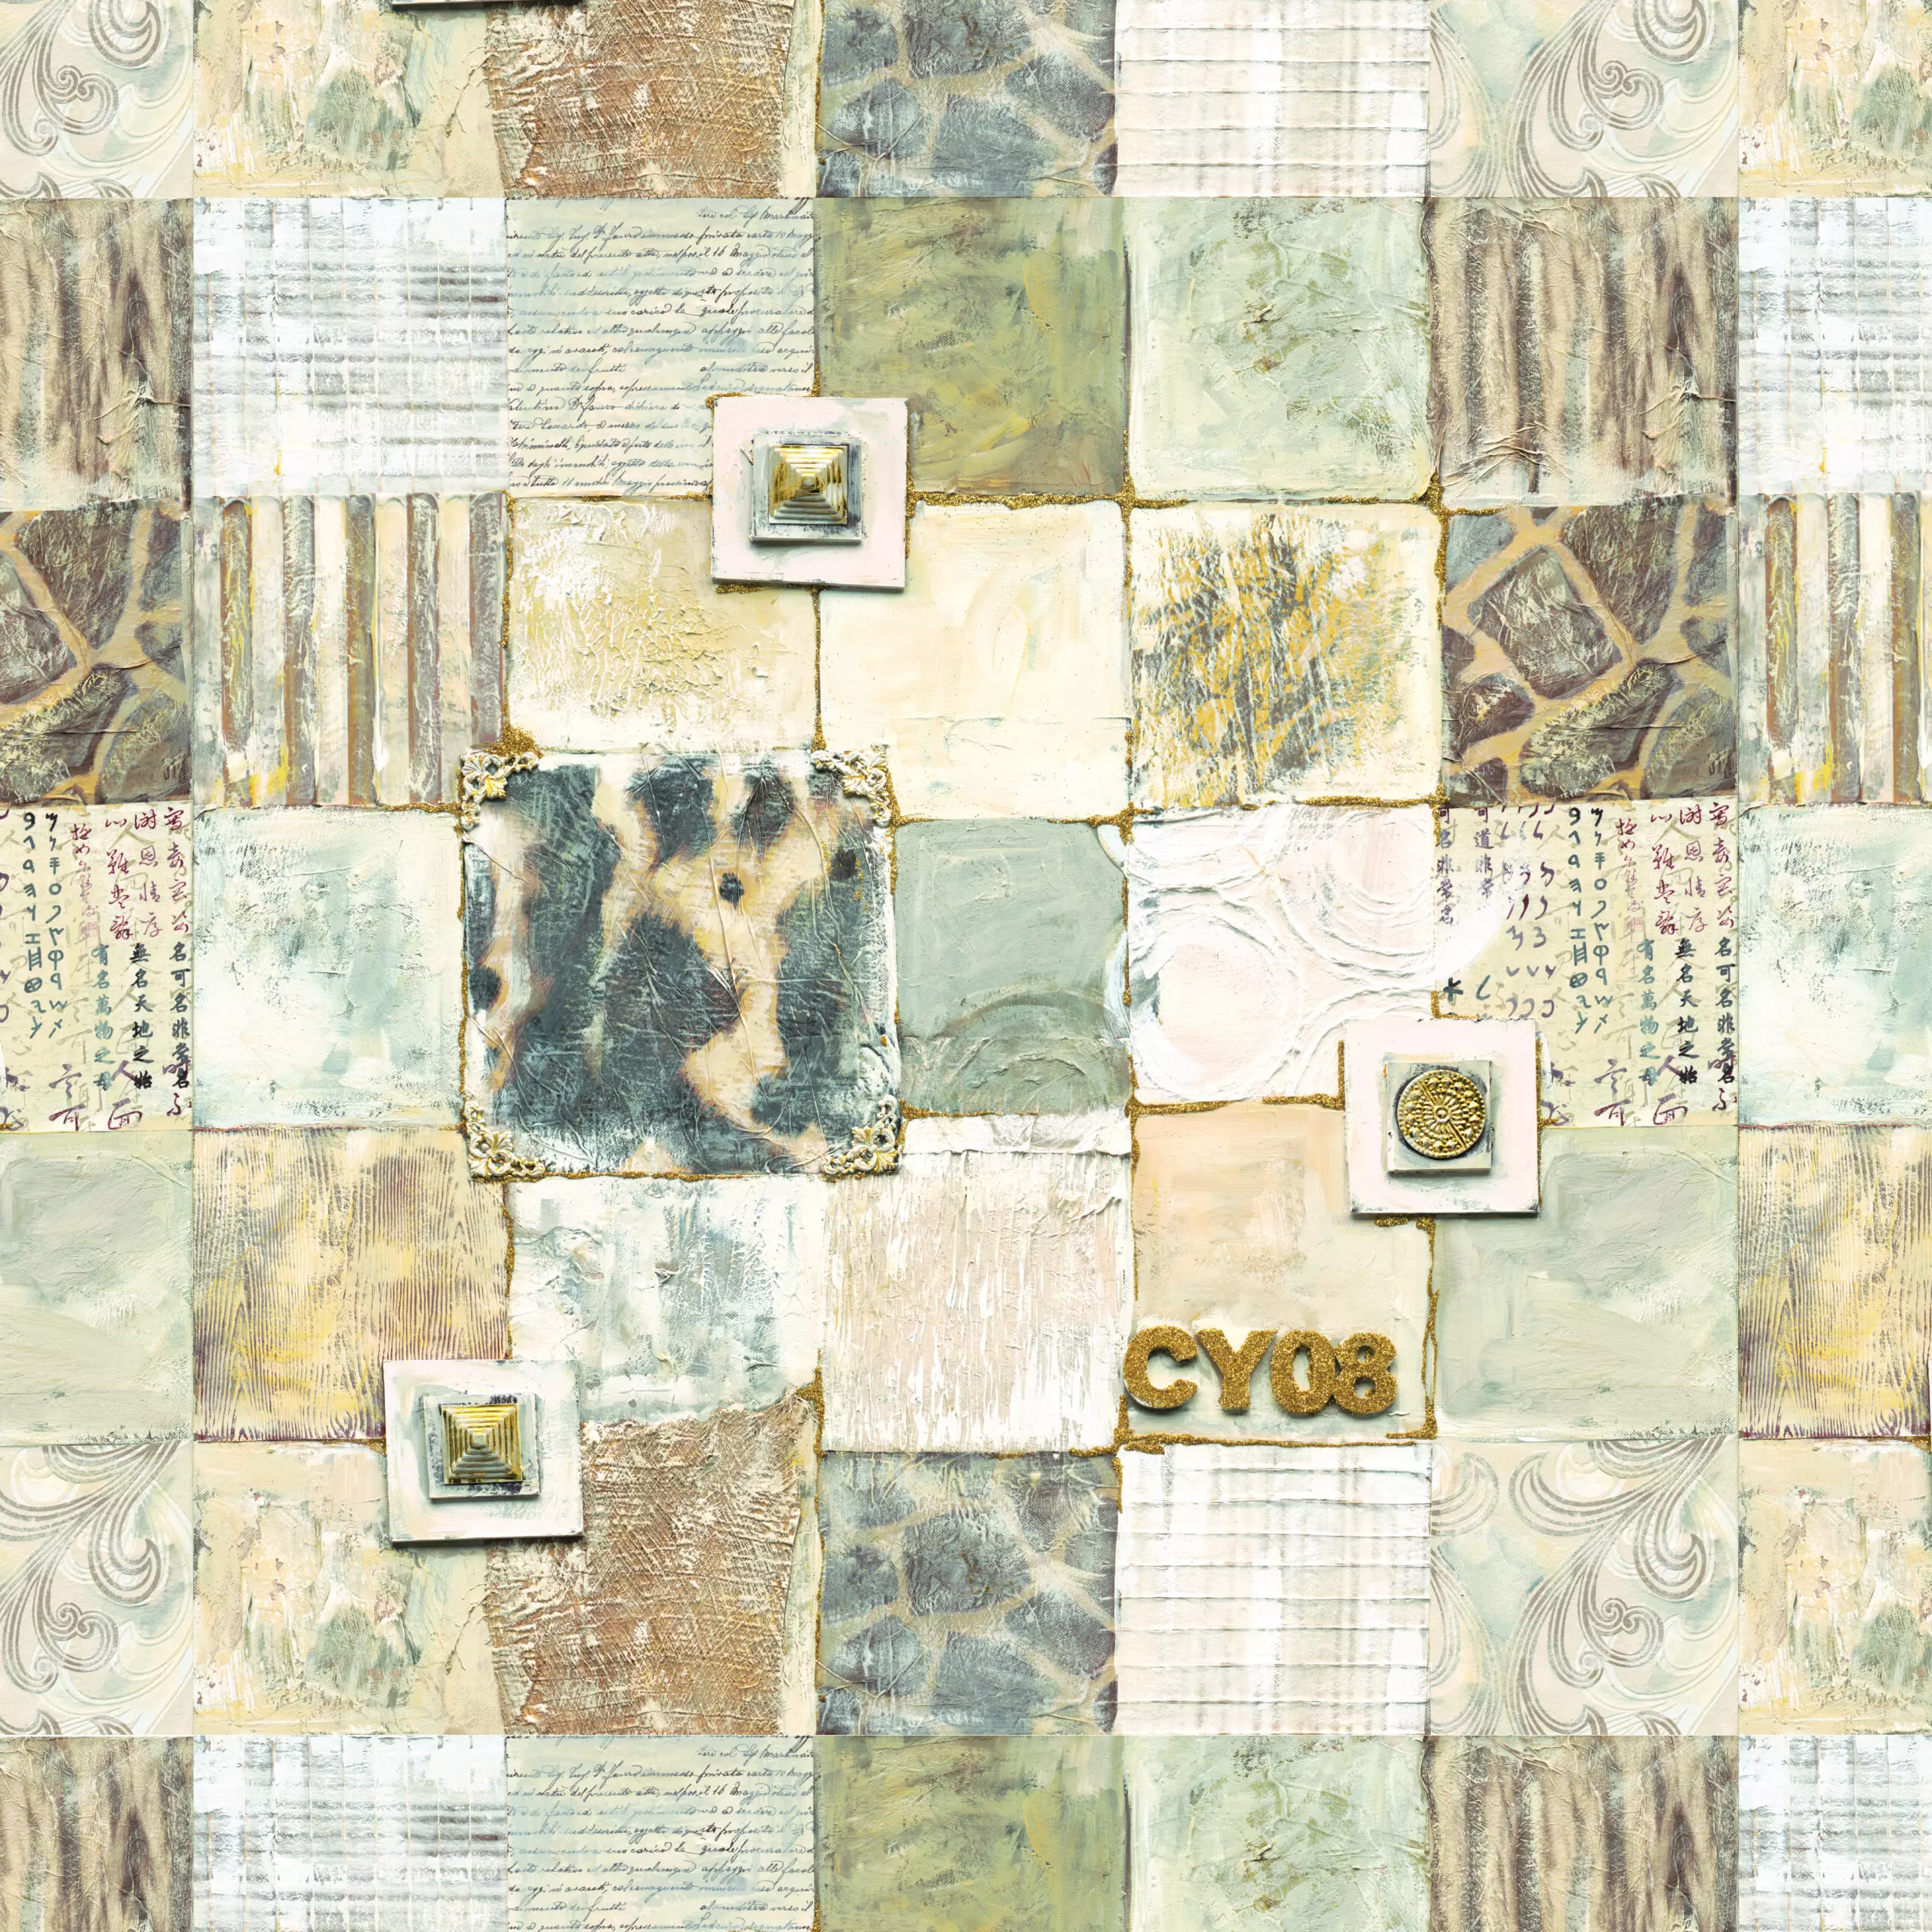 Wandbild (4966) Lucky CY08 präsentiert: Kreatives,Details und Strukturen,Abstrakt,Natur,Pflanzen,Tiere